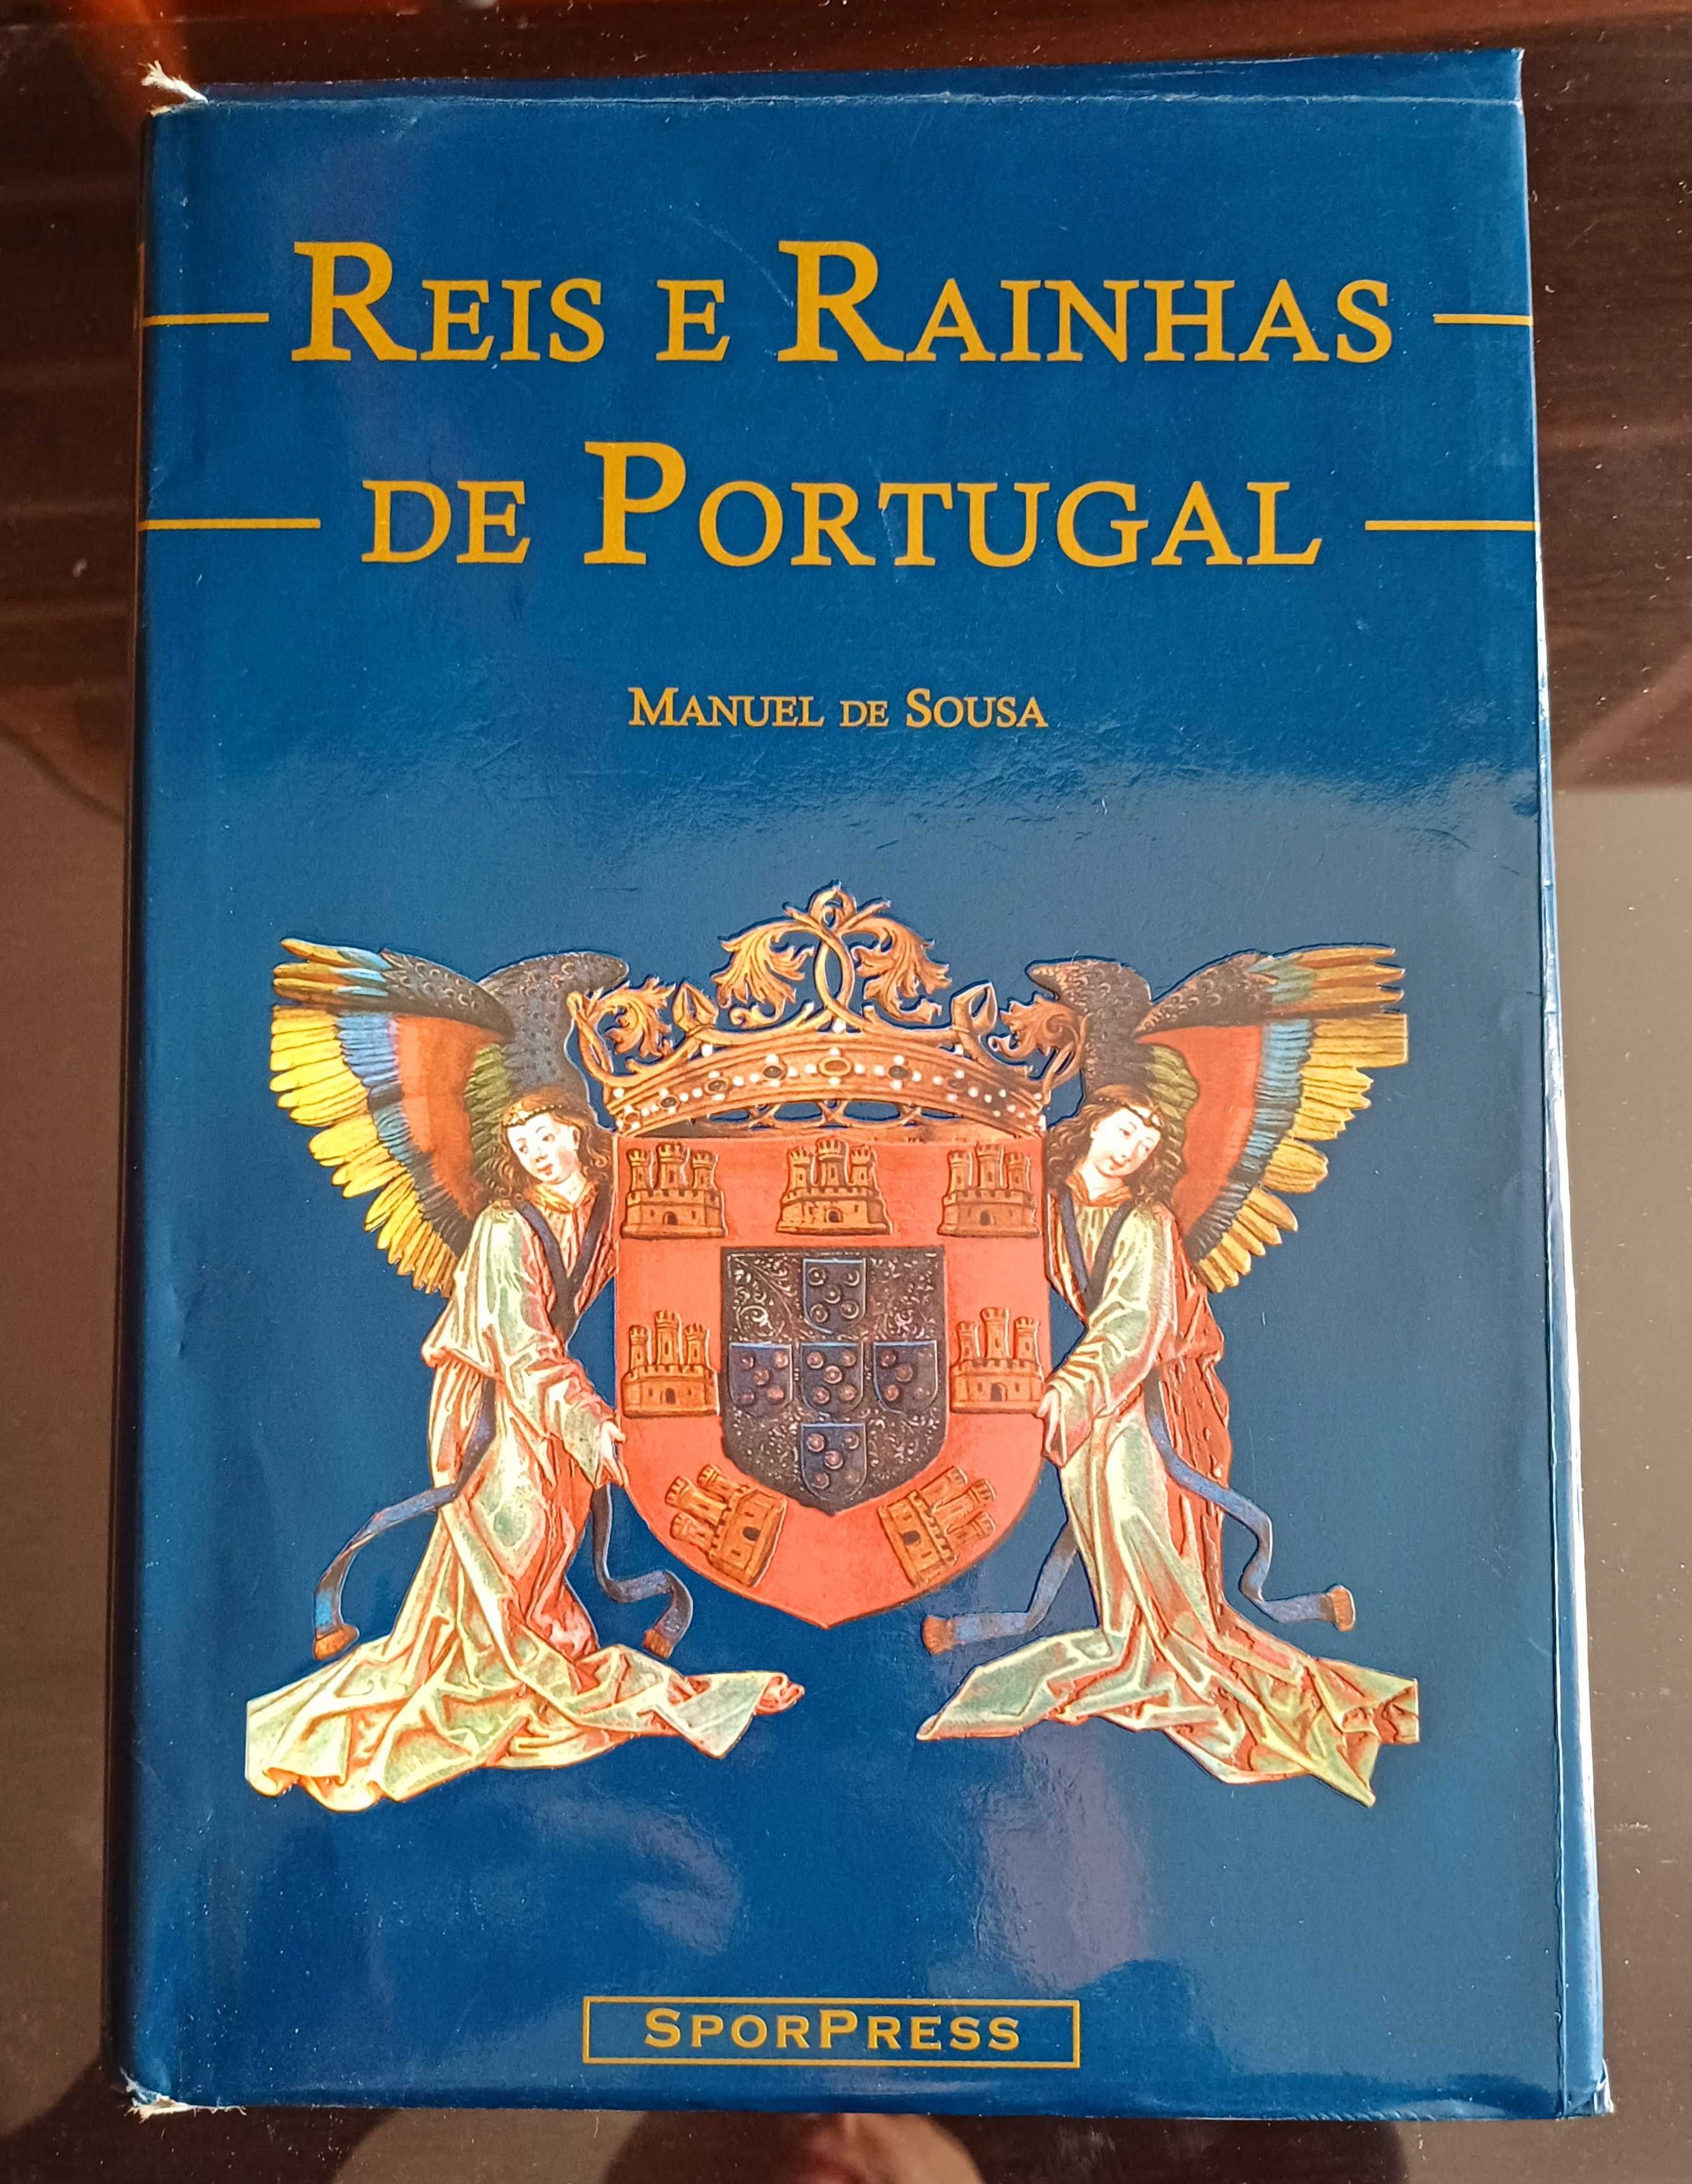 Manuel de Sousa - Reis e Rainhas de Portugal